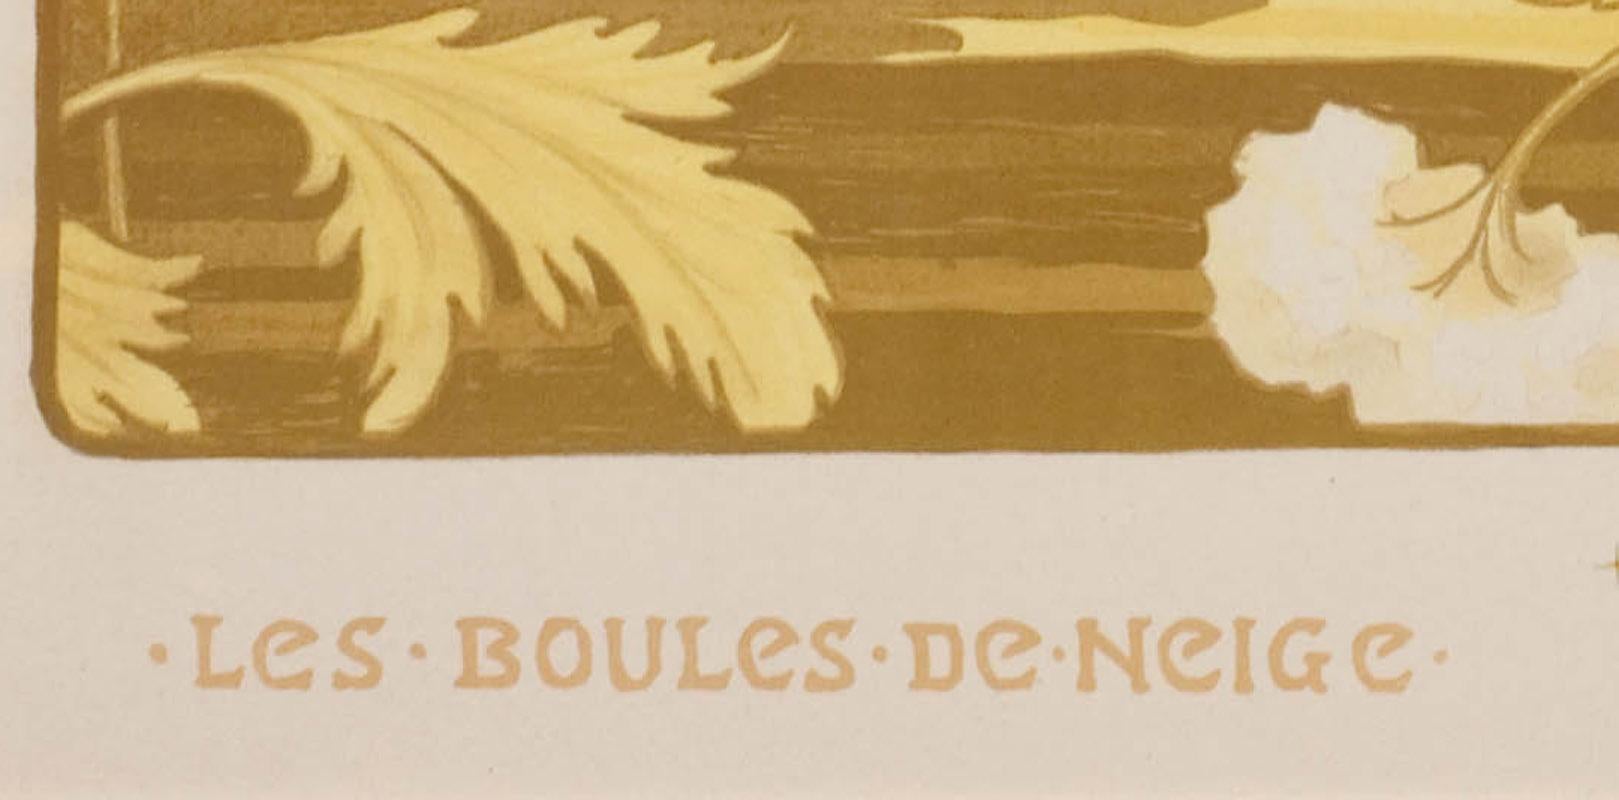 Les Boules de Neige (Snowballs) - Art Nouveau Print by Paul Berthon